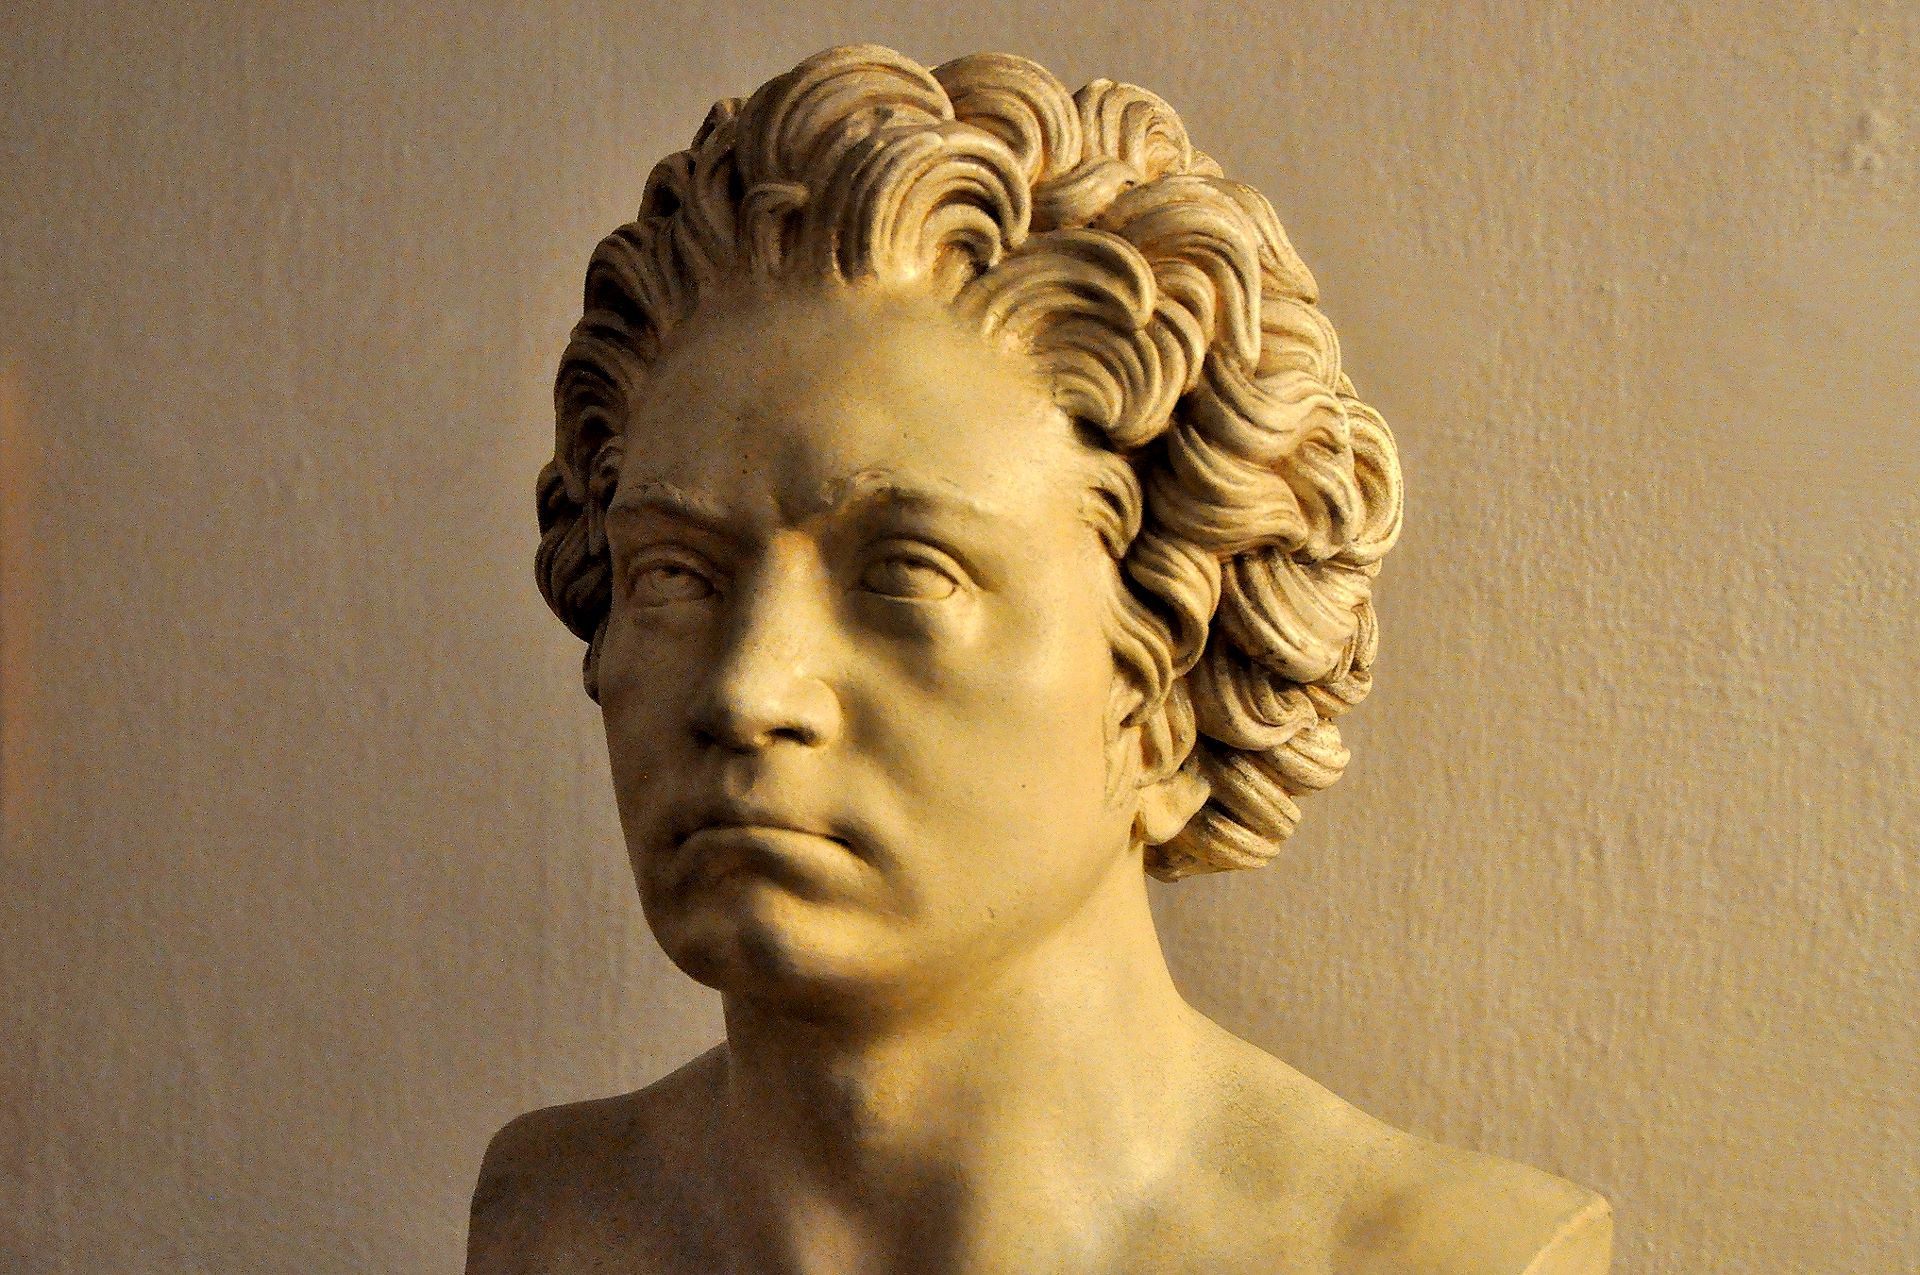 Beethoven als großer Komponist der Wiener Klassik